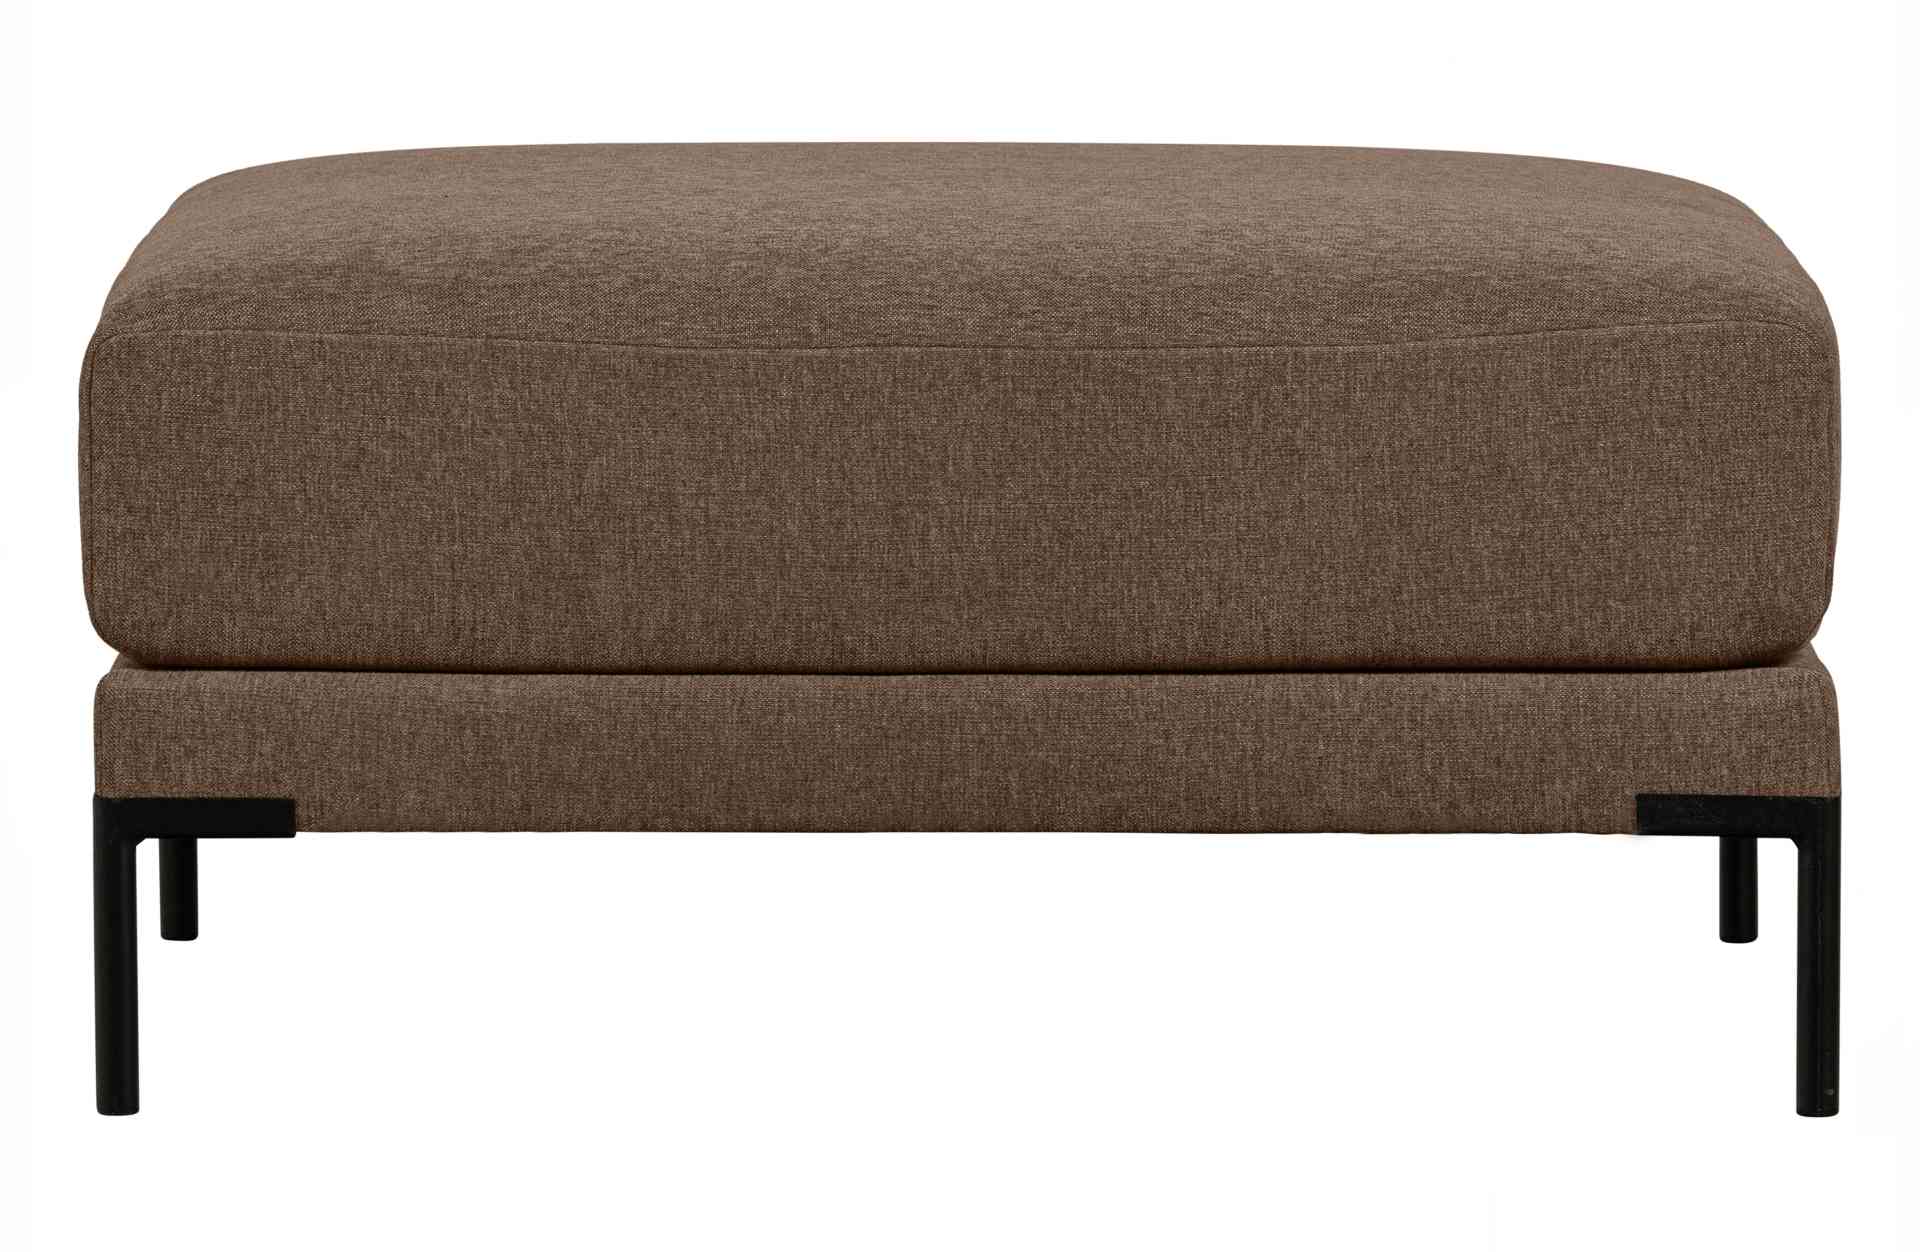 Das Modulsofa Couple Lounge überzeugt mit seinem modernen Design. Das Lounge Element mit der Ausführung 100 cm wurde aus Melange Stoff gefertigt, welcher einen einen braunen Farbton besitzen. Das Gestell ist aus Metall und hat eine schwarze Farbe. Das Ele